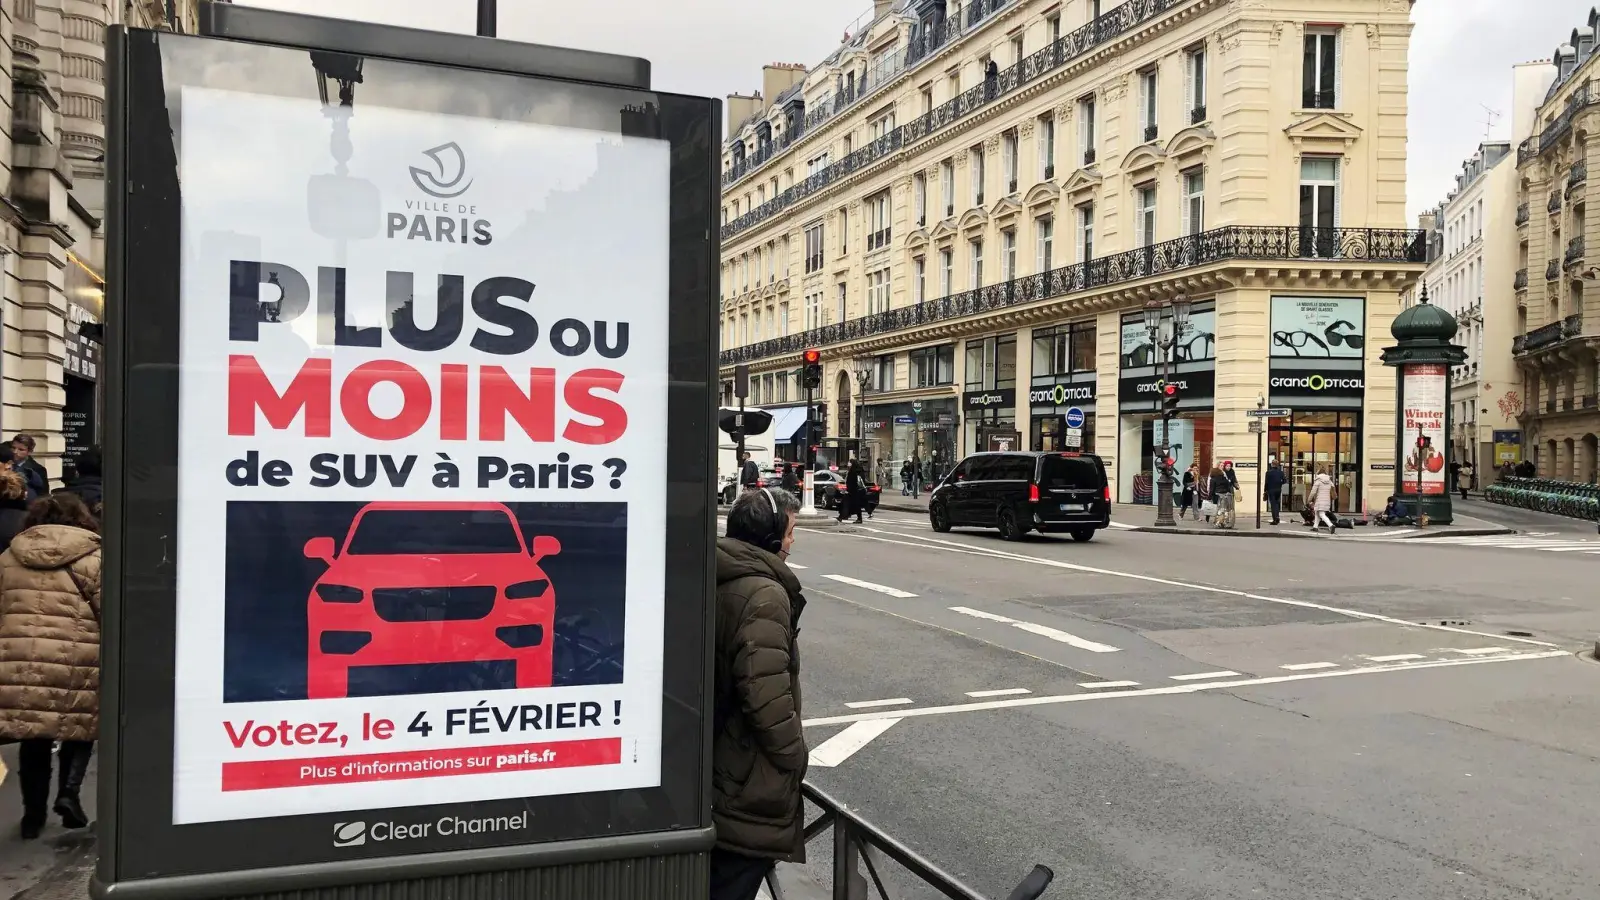 Auf einer Werbetafel informiert die Stadt Paris über eine Bürgerbefragung zu erhöhten Parkgebühren für SUV. (Foto: Michael Evers/dpa)